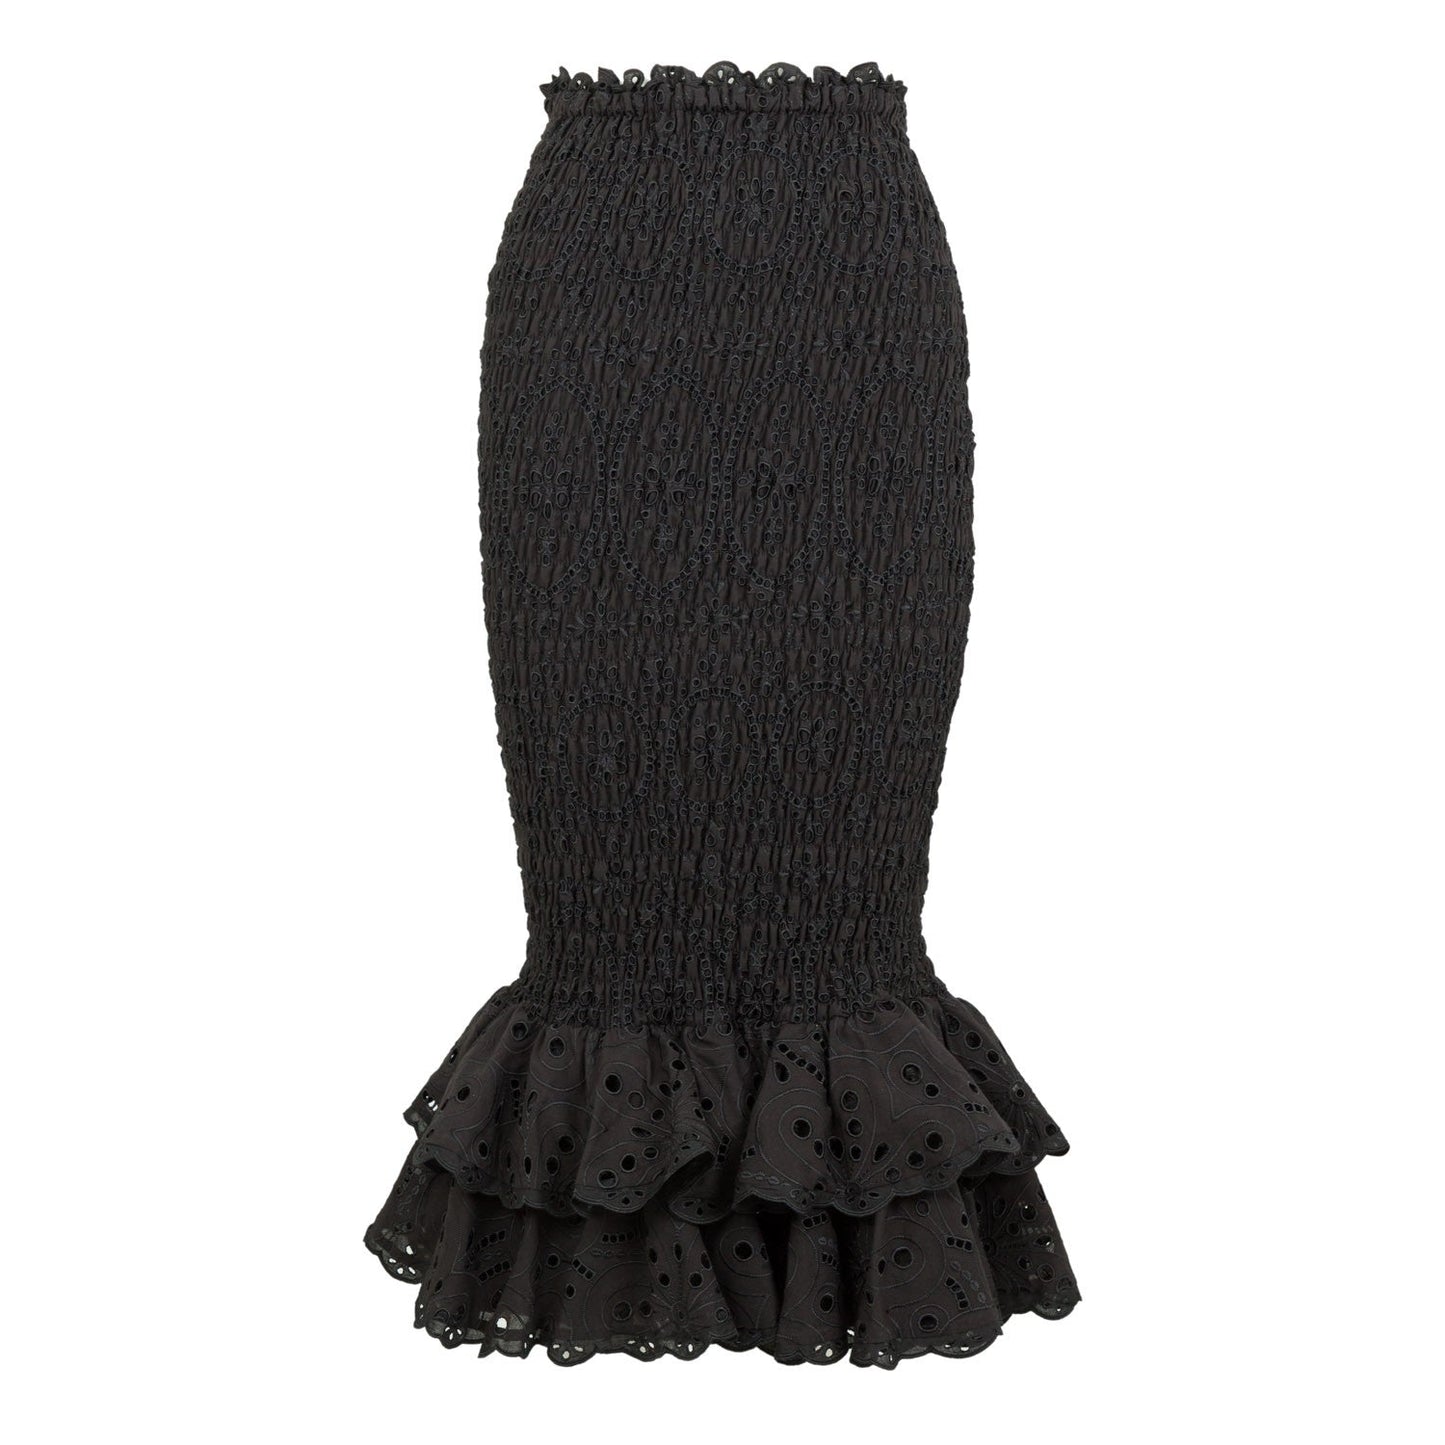 Charo Ruiz Liliana Long Skirt - Premium long skirt from Marina St Barth - Just $645.00! Shop now at Marina St Barth